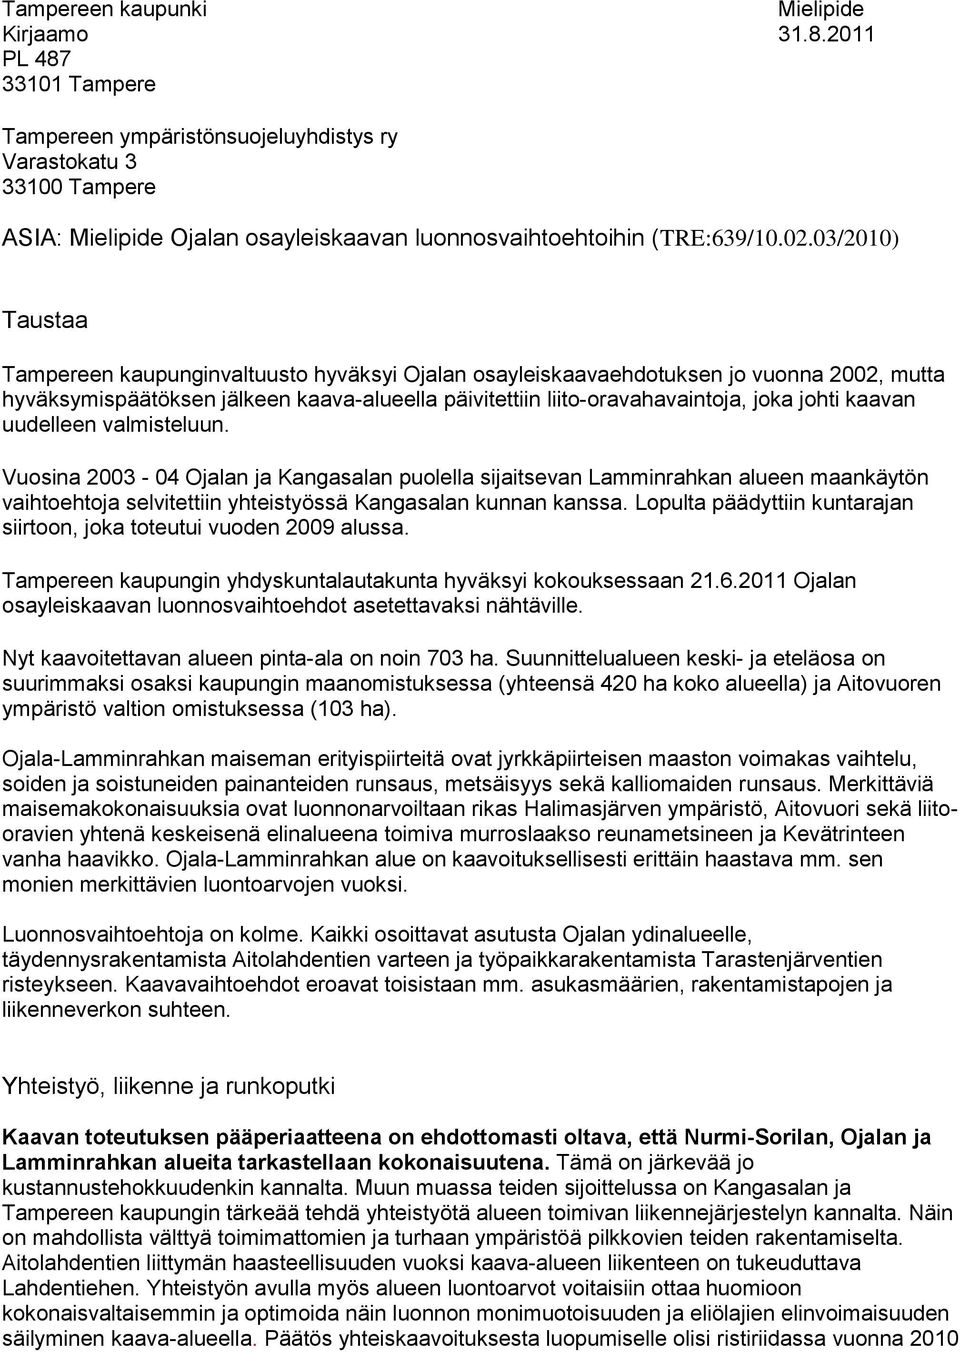 03/2010) Taustaa Tampereen kaupunginvaltuusto hyväksyi Ojalan osayleiskaavaehdotuksen jo vuonna 2002, mutta hyväksymispäätöksen jälkeen kaava-alueella päivitettiin liito-oravahavaintoja, joka johti